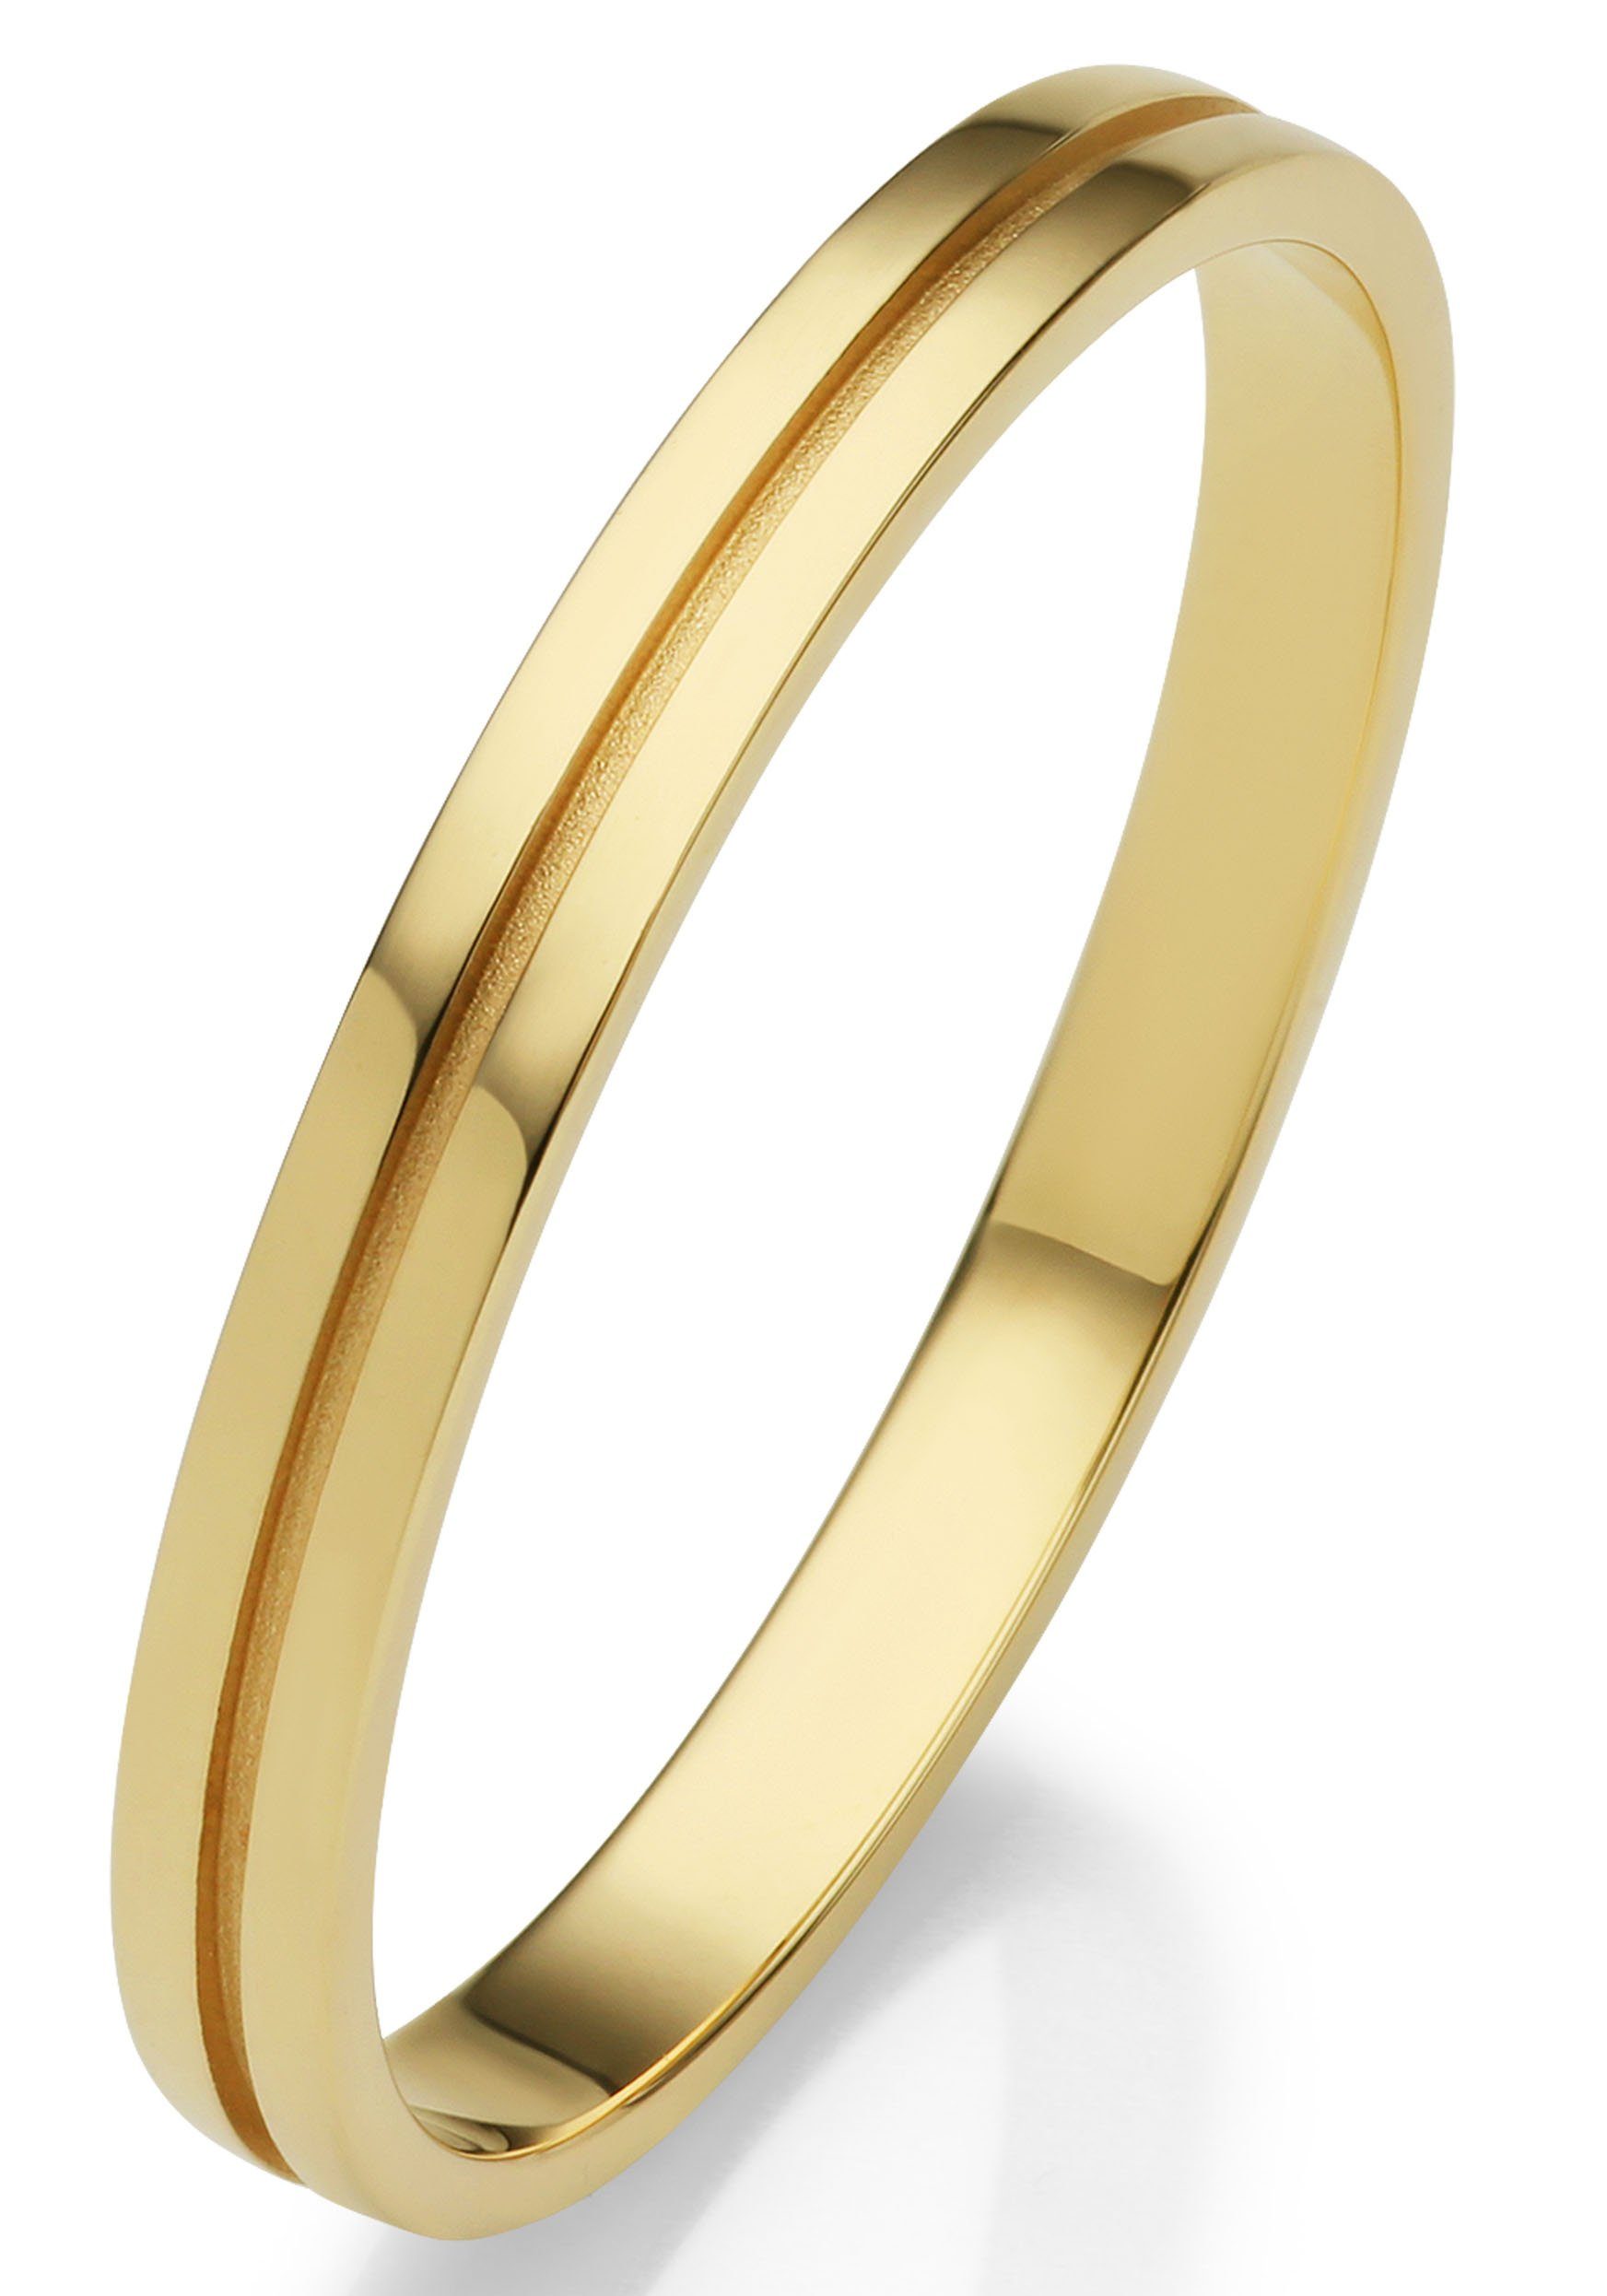 Gold mit Germany Schmuck ohne o. Trauring Geschenk Ehering 375 Brillanten/Diamanten in Hochzeit "LIEBE", Made Firetti -